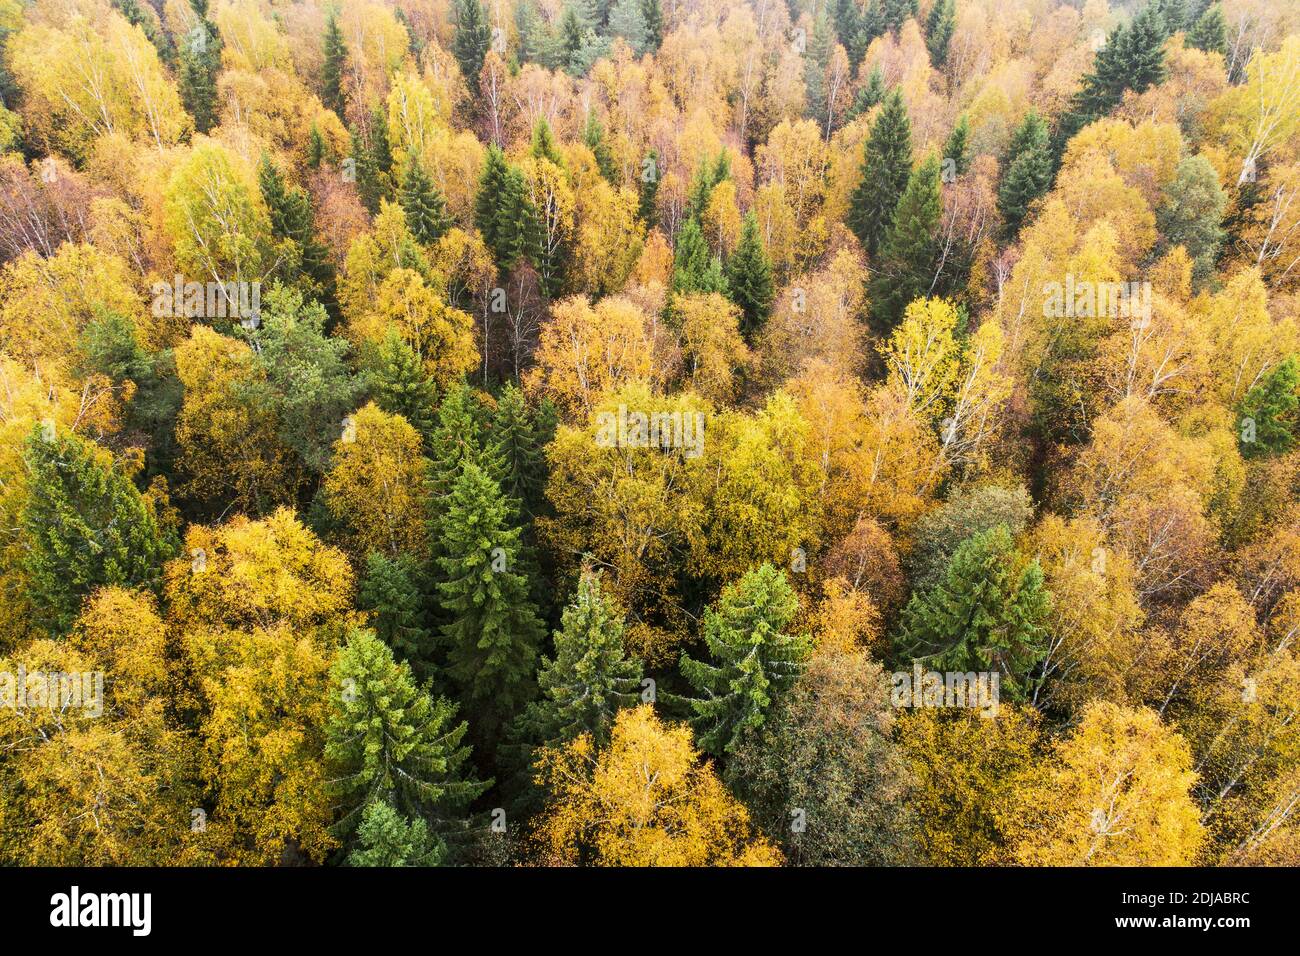 Aérea de exuberante bosque boreal salvaje durante el colorido follaje otoñal en la naturaleza europea. Foto de stock